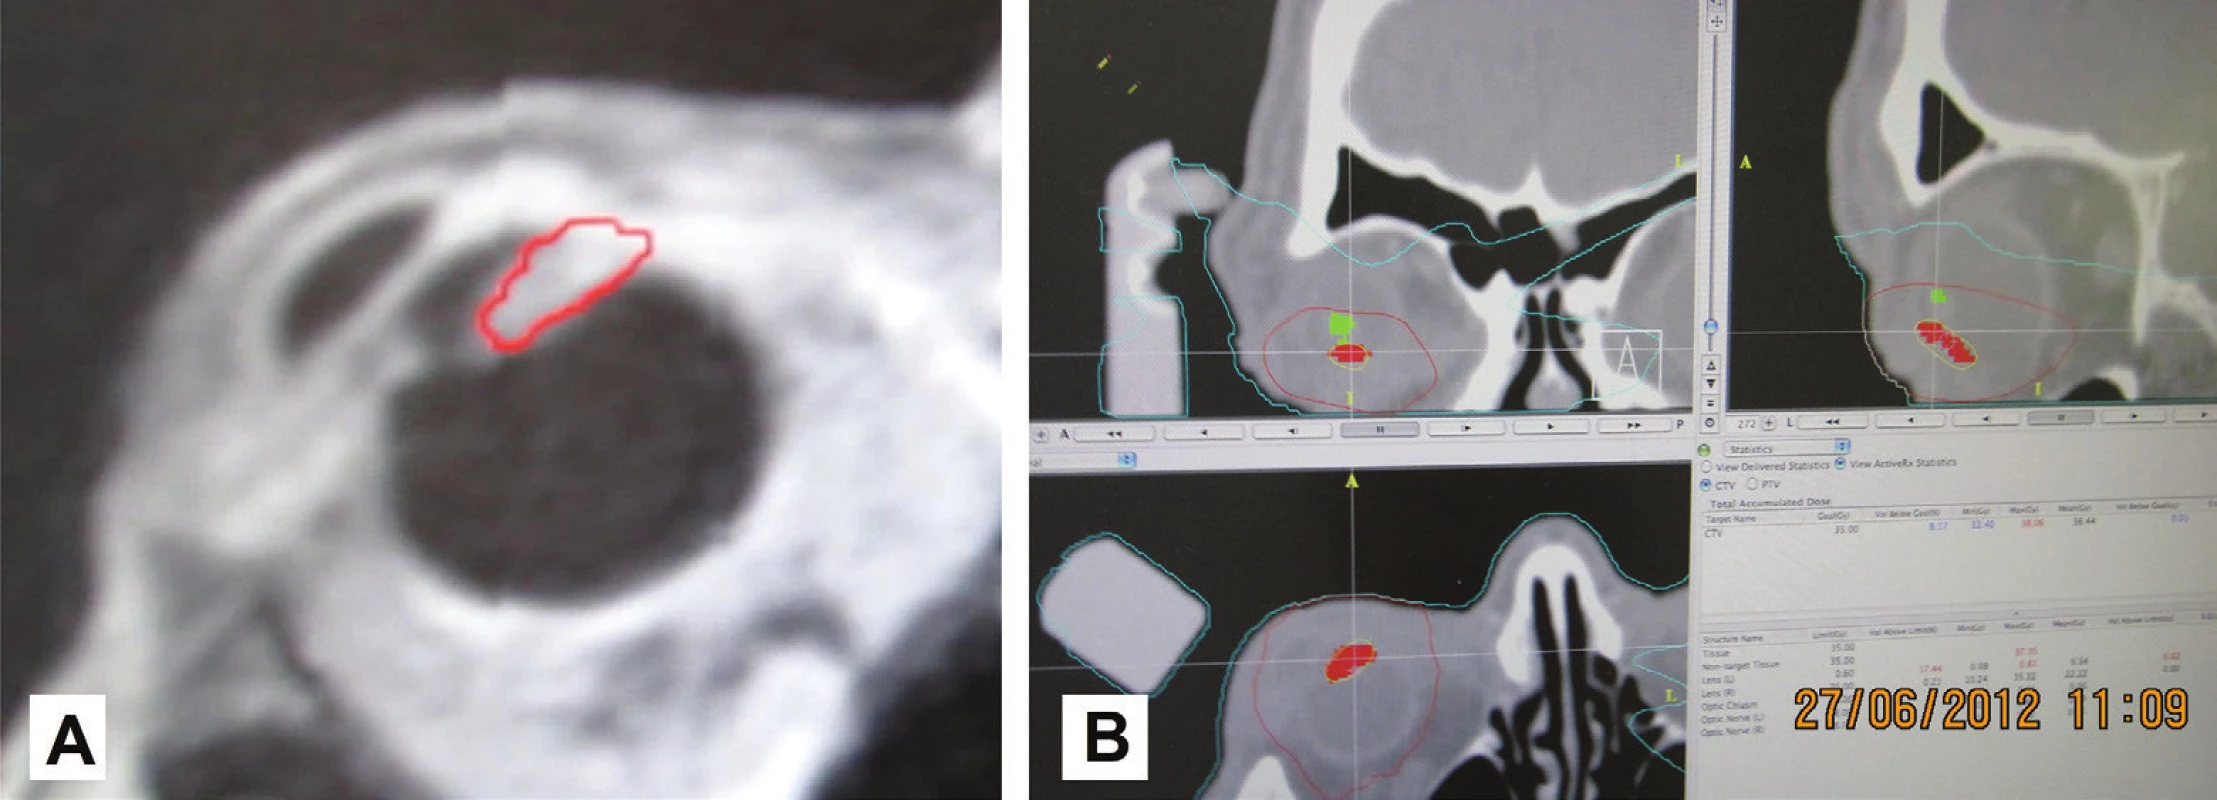 MRI obraz pacienta so zakresleným tumorom v oblasti corpus ciliare s prerastaním smerom „dopredu“ a do komorového uhla (A) a zakreslenie tumoru corpus ciliare (červená farba) a šošovky (zelená farba) v plánovacej schéme rádiochirurgického ožiarenia na lineárnom urýchľovači (B)